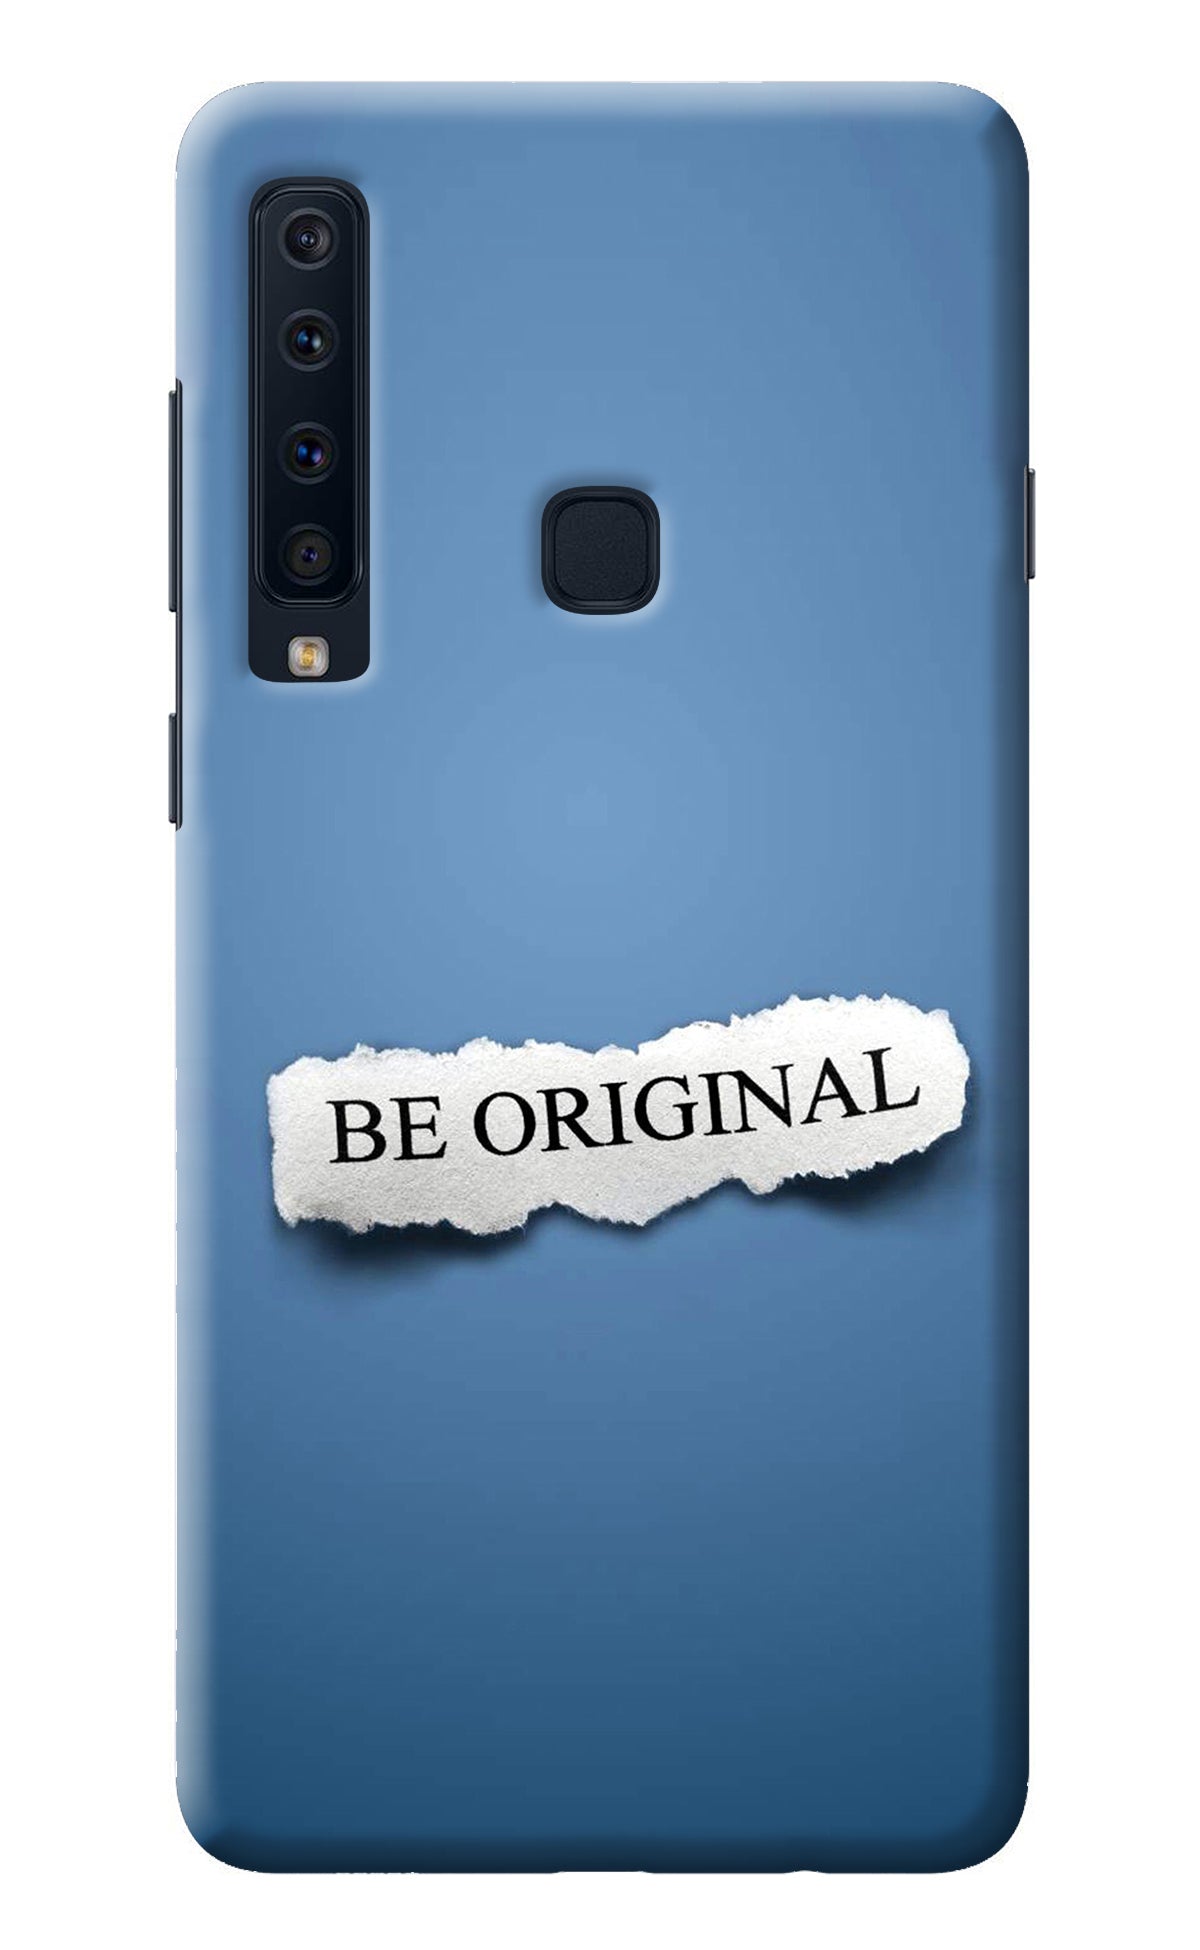 Be Original Samsung A9 Back Cover